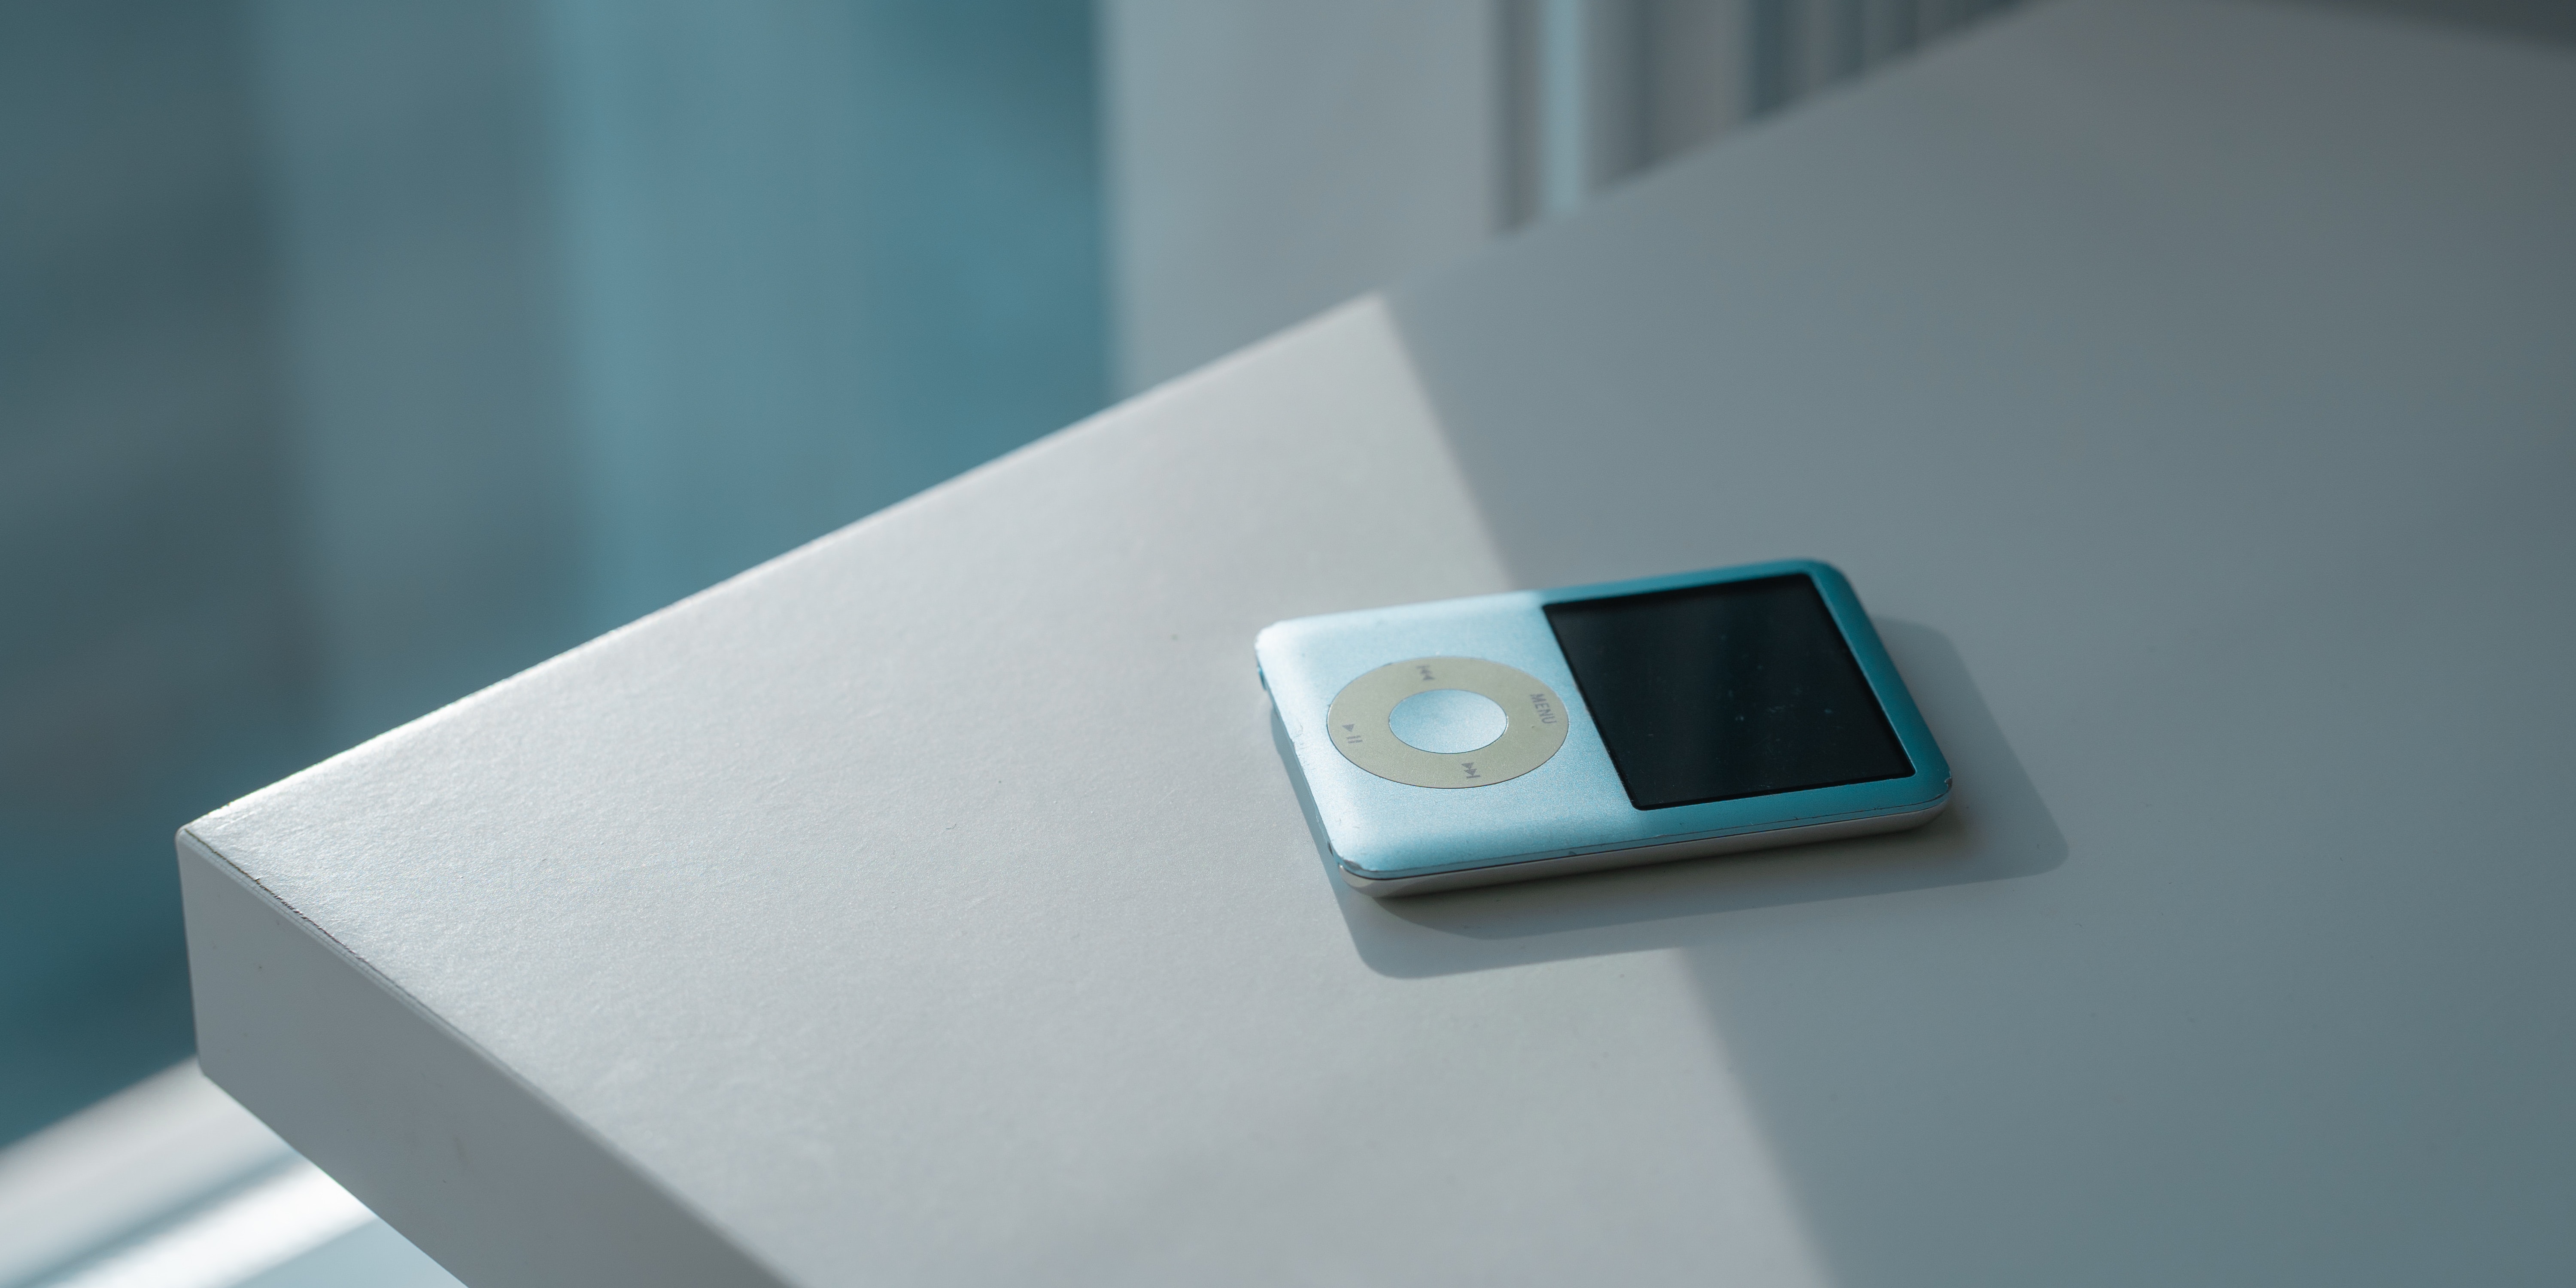 Колёсико iPod Classic возможно скоро вернется